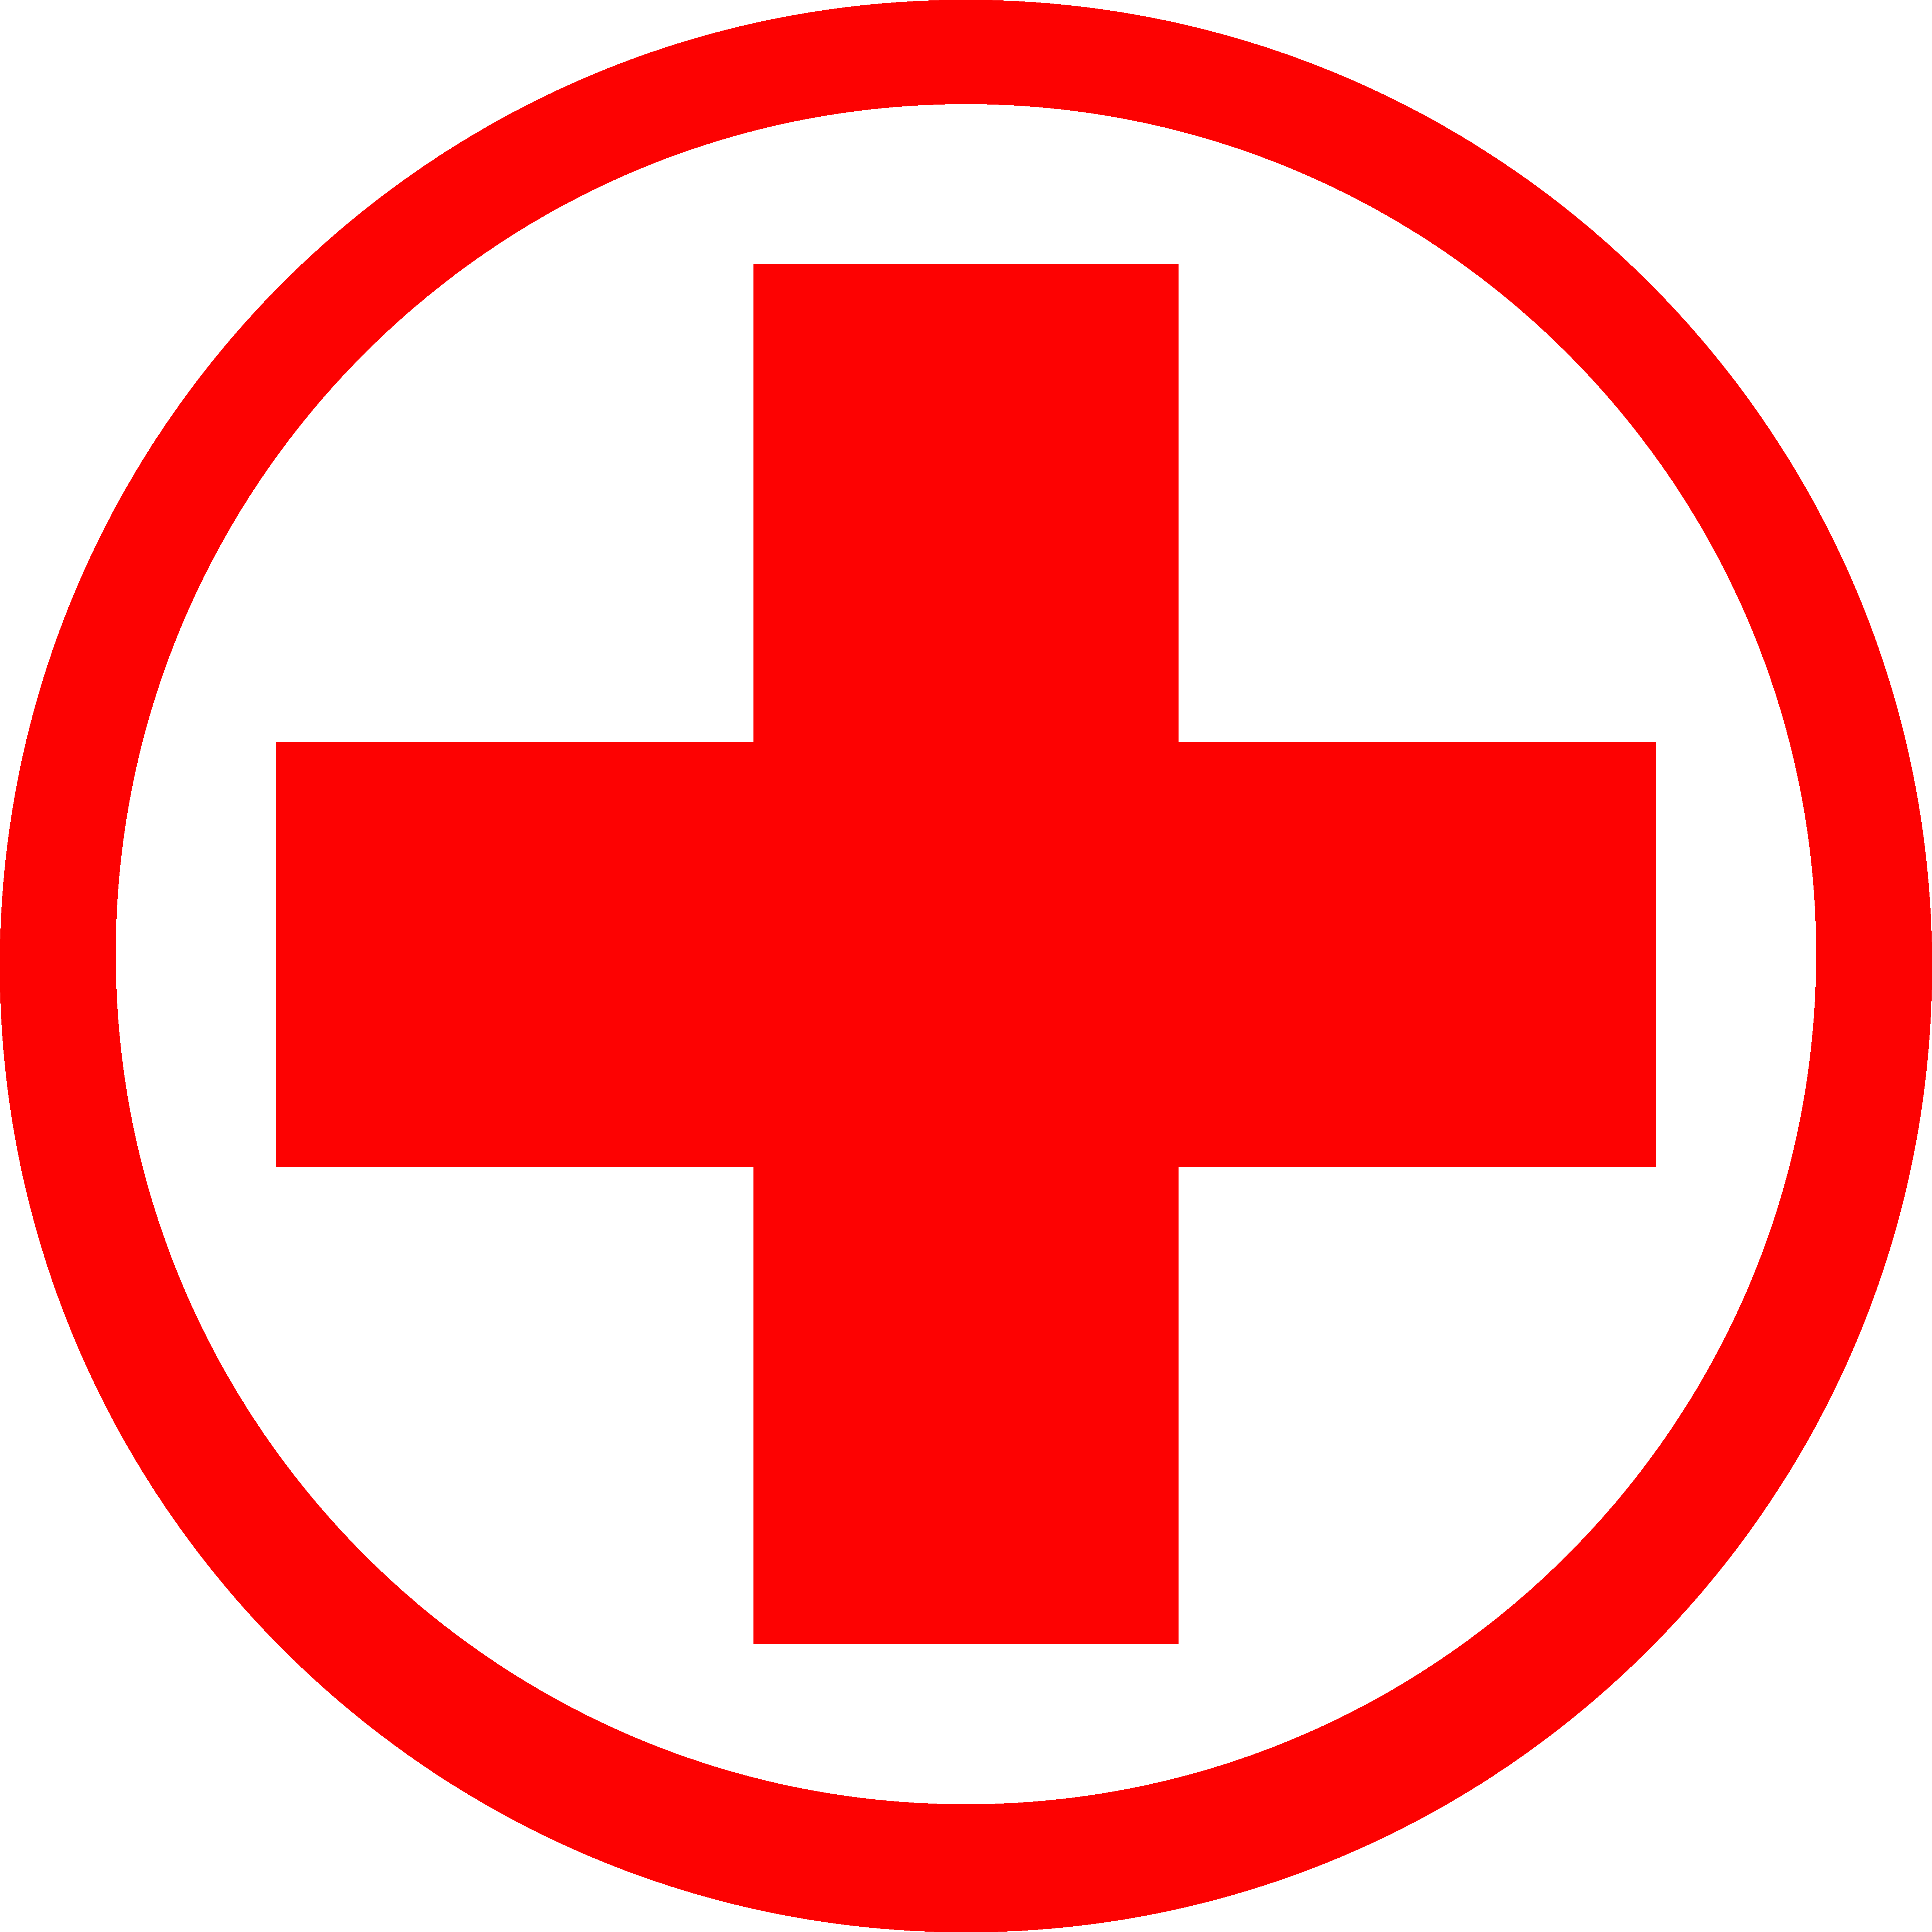 Top 10 transparent background red cross đẹp và dễ sử dụng cho ảnh y tế